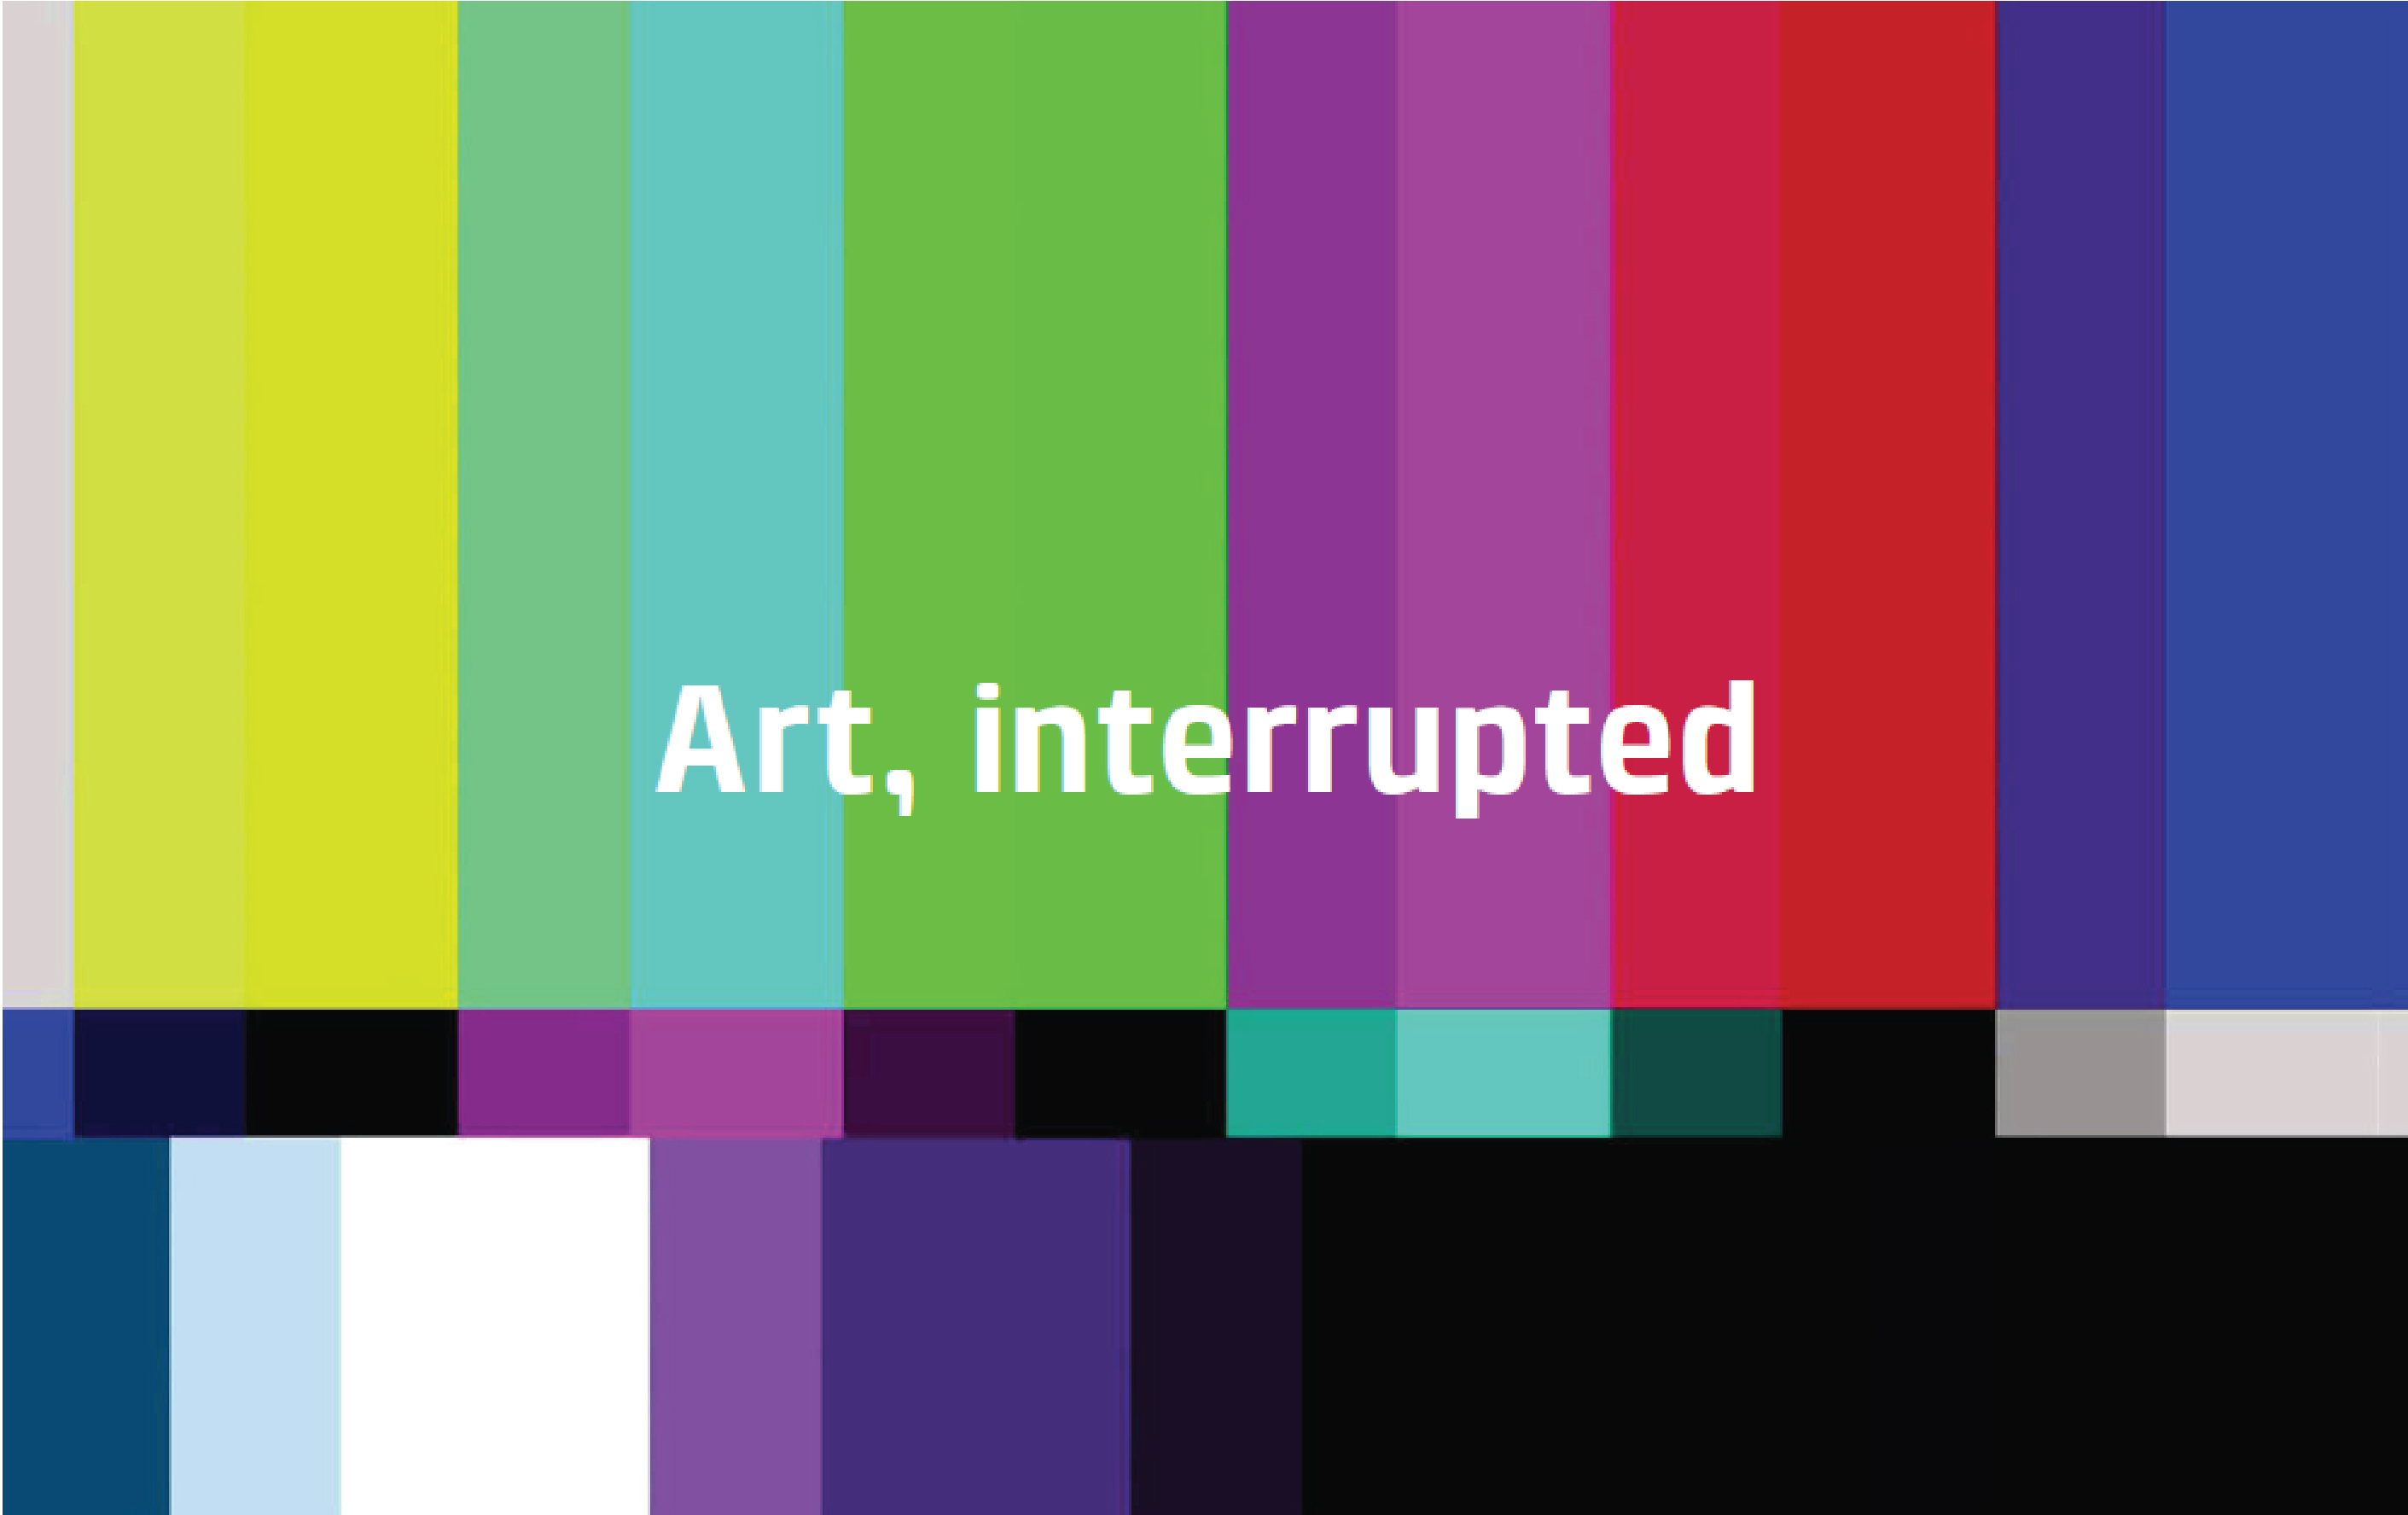 Art, interrupted